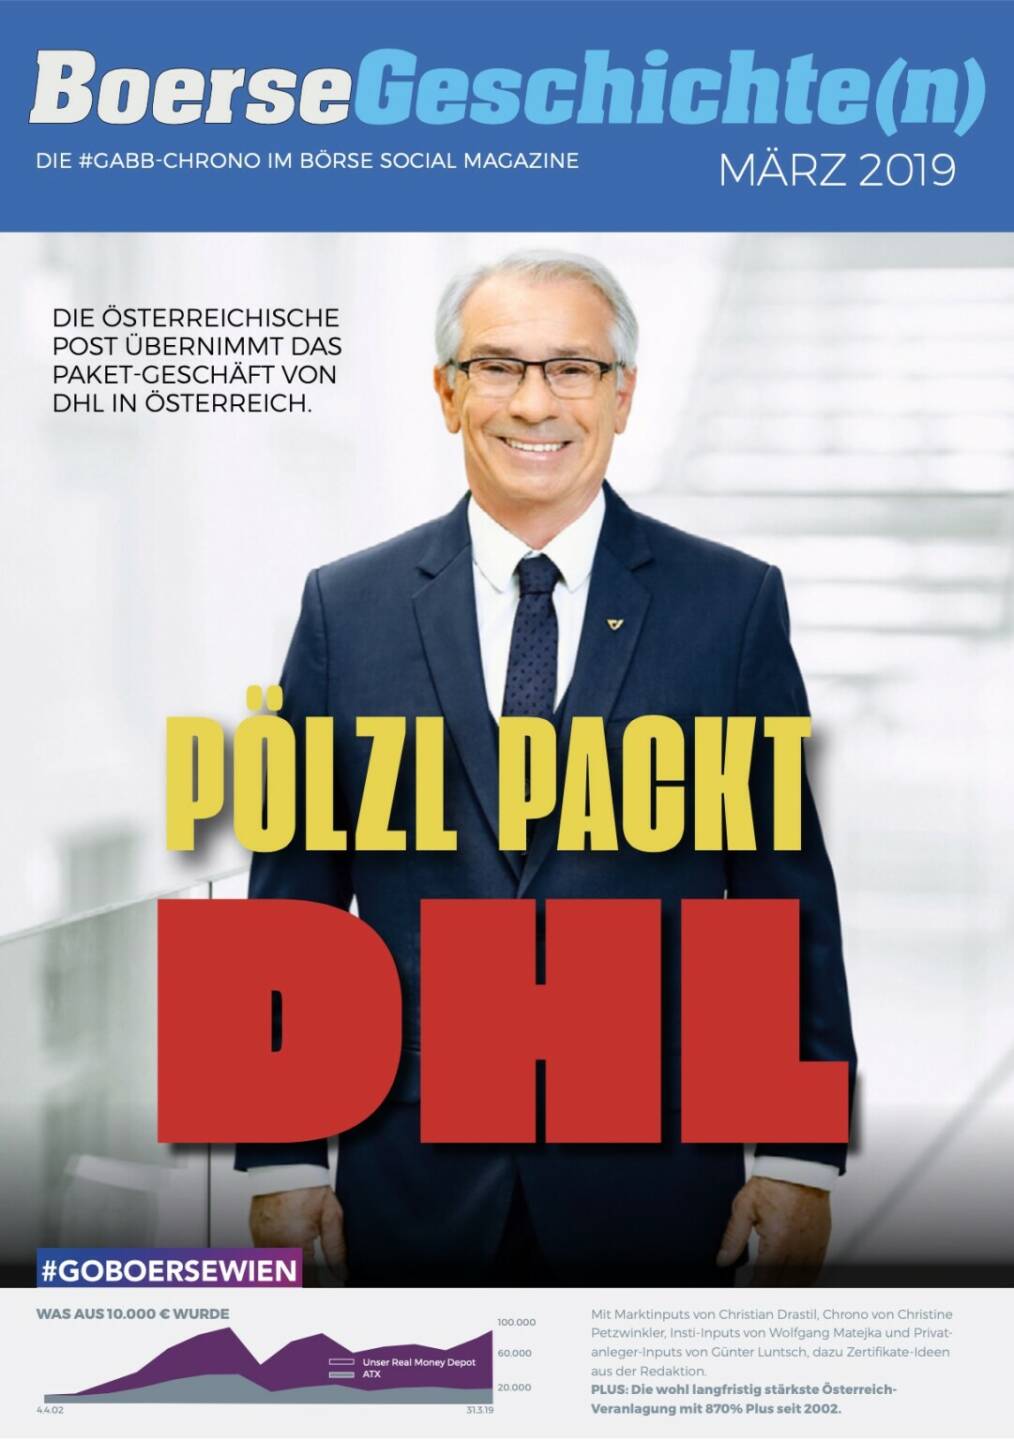 Börsegeschichte(n) März 2019 - Pölzl packt DHL